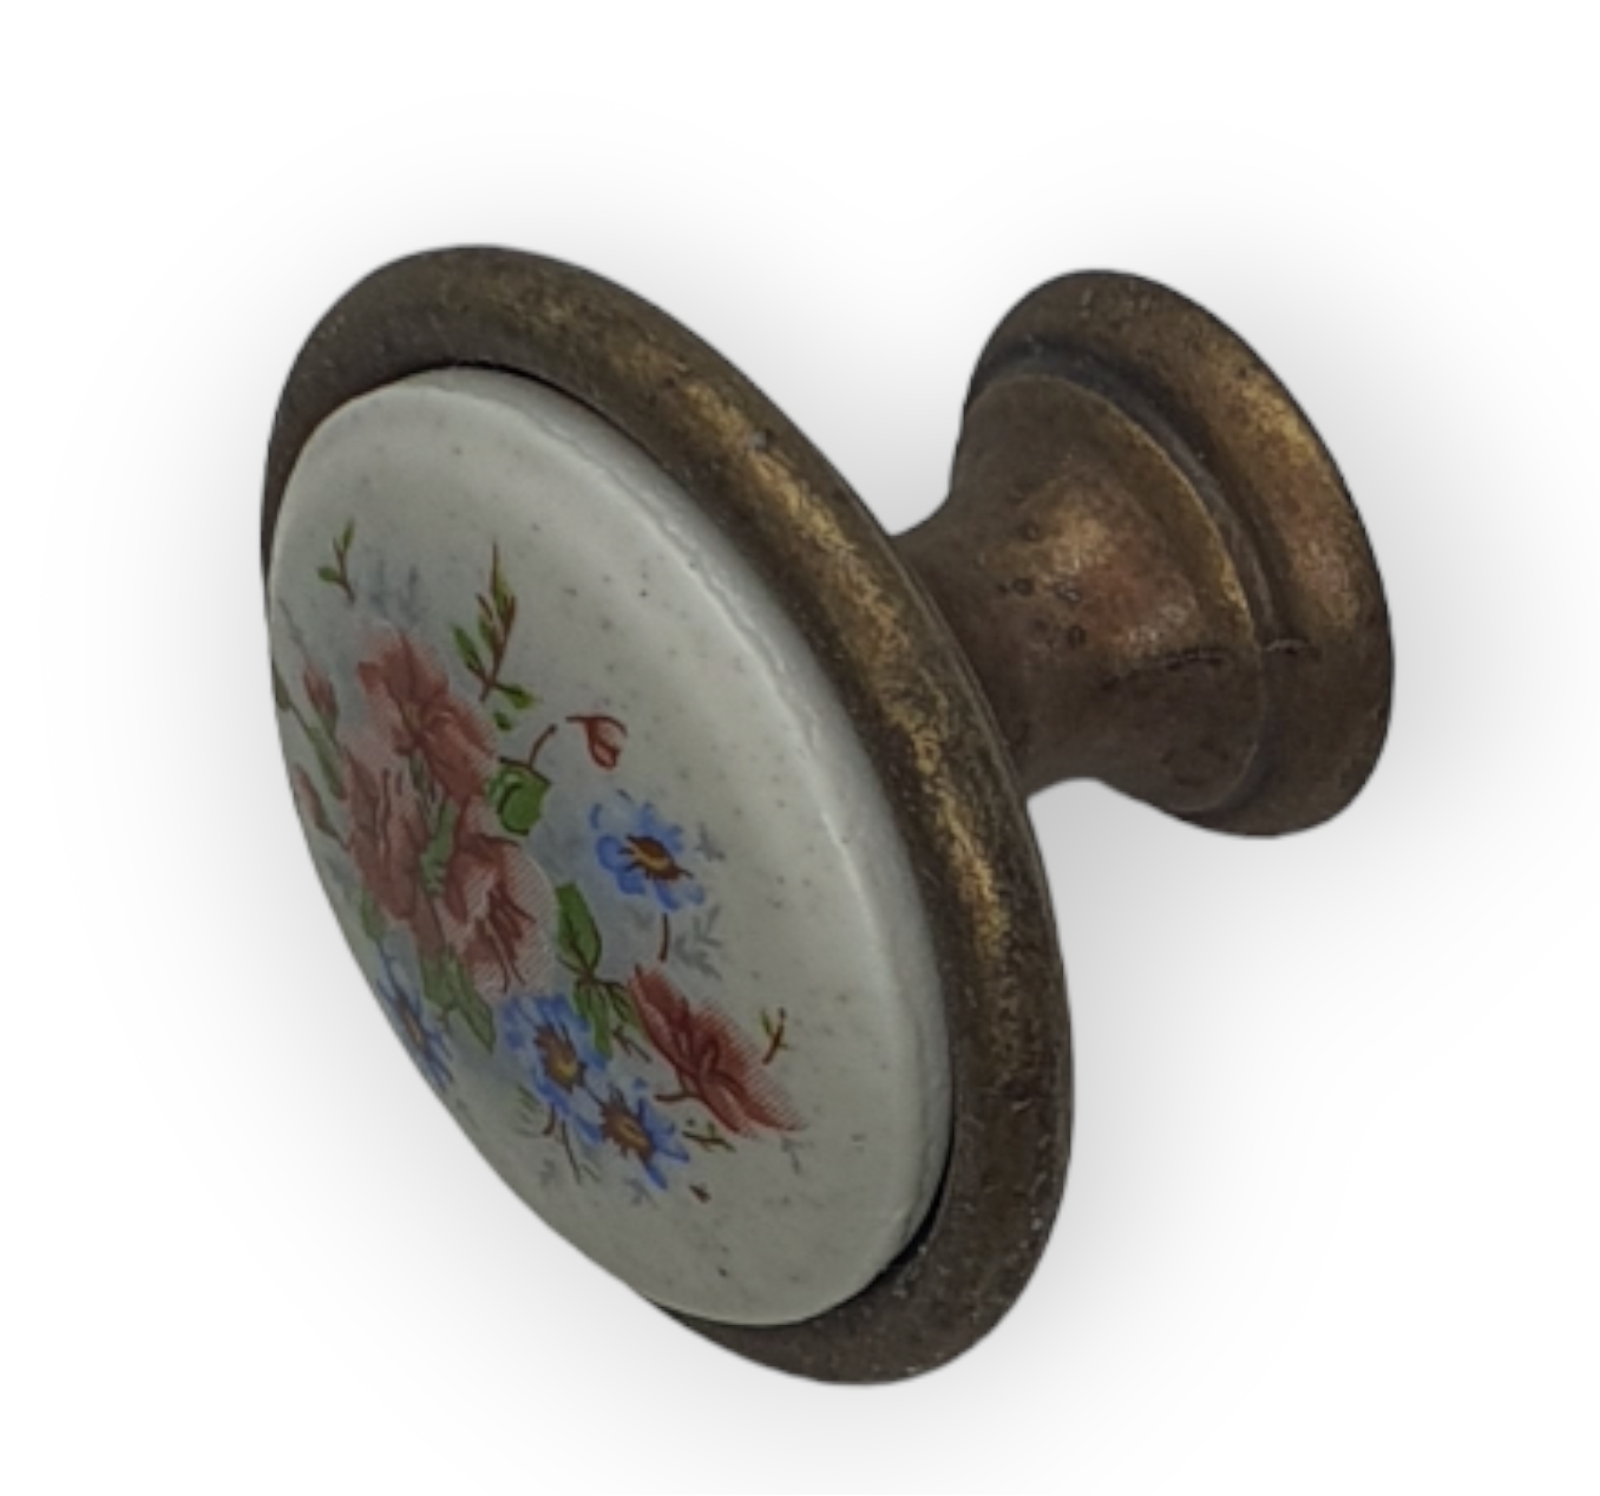 Möbelknopf mit Keramik-Dekor-Einlage, Ø 34mm, Art. 43134 -Bestellart.